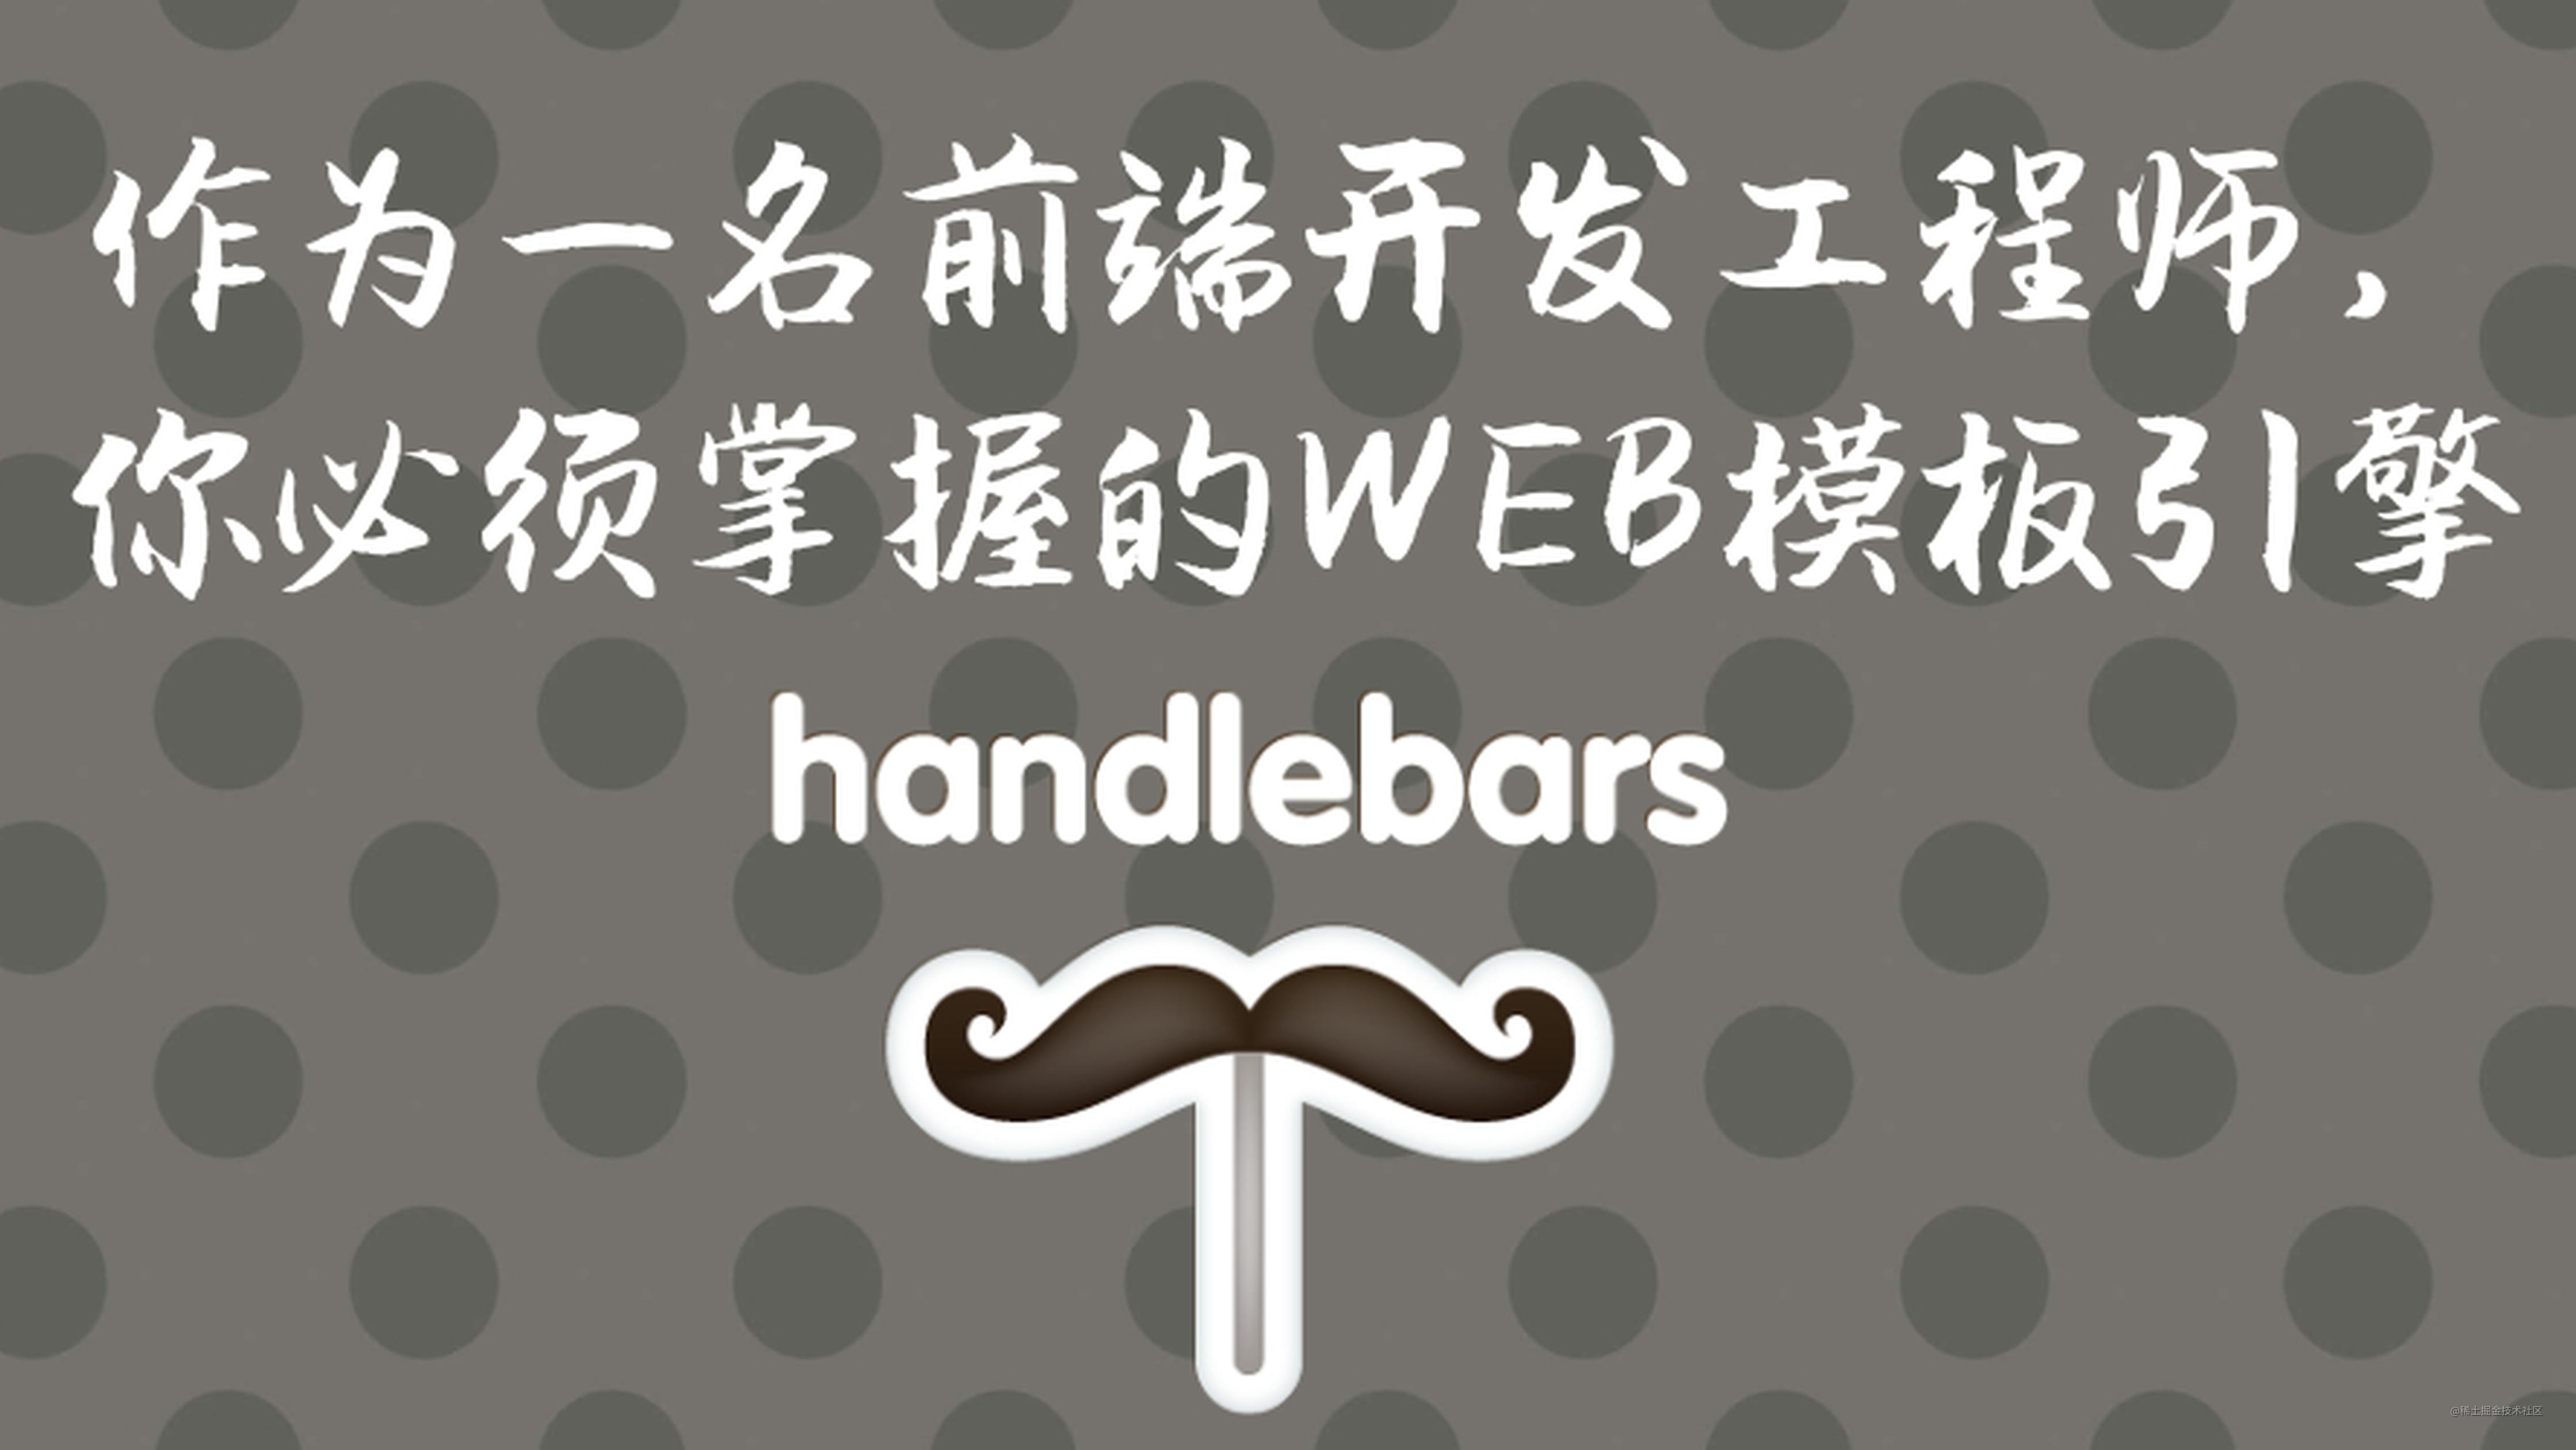 作为一名前端开发工程师，你必须掌握的WEB模板引擎：Handlebars